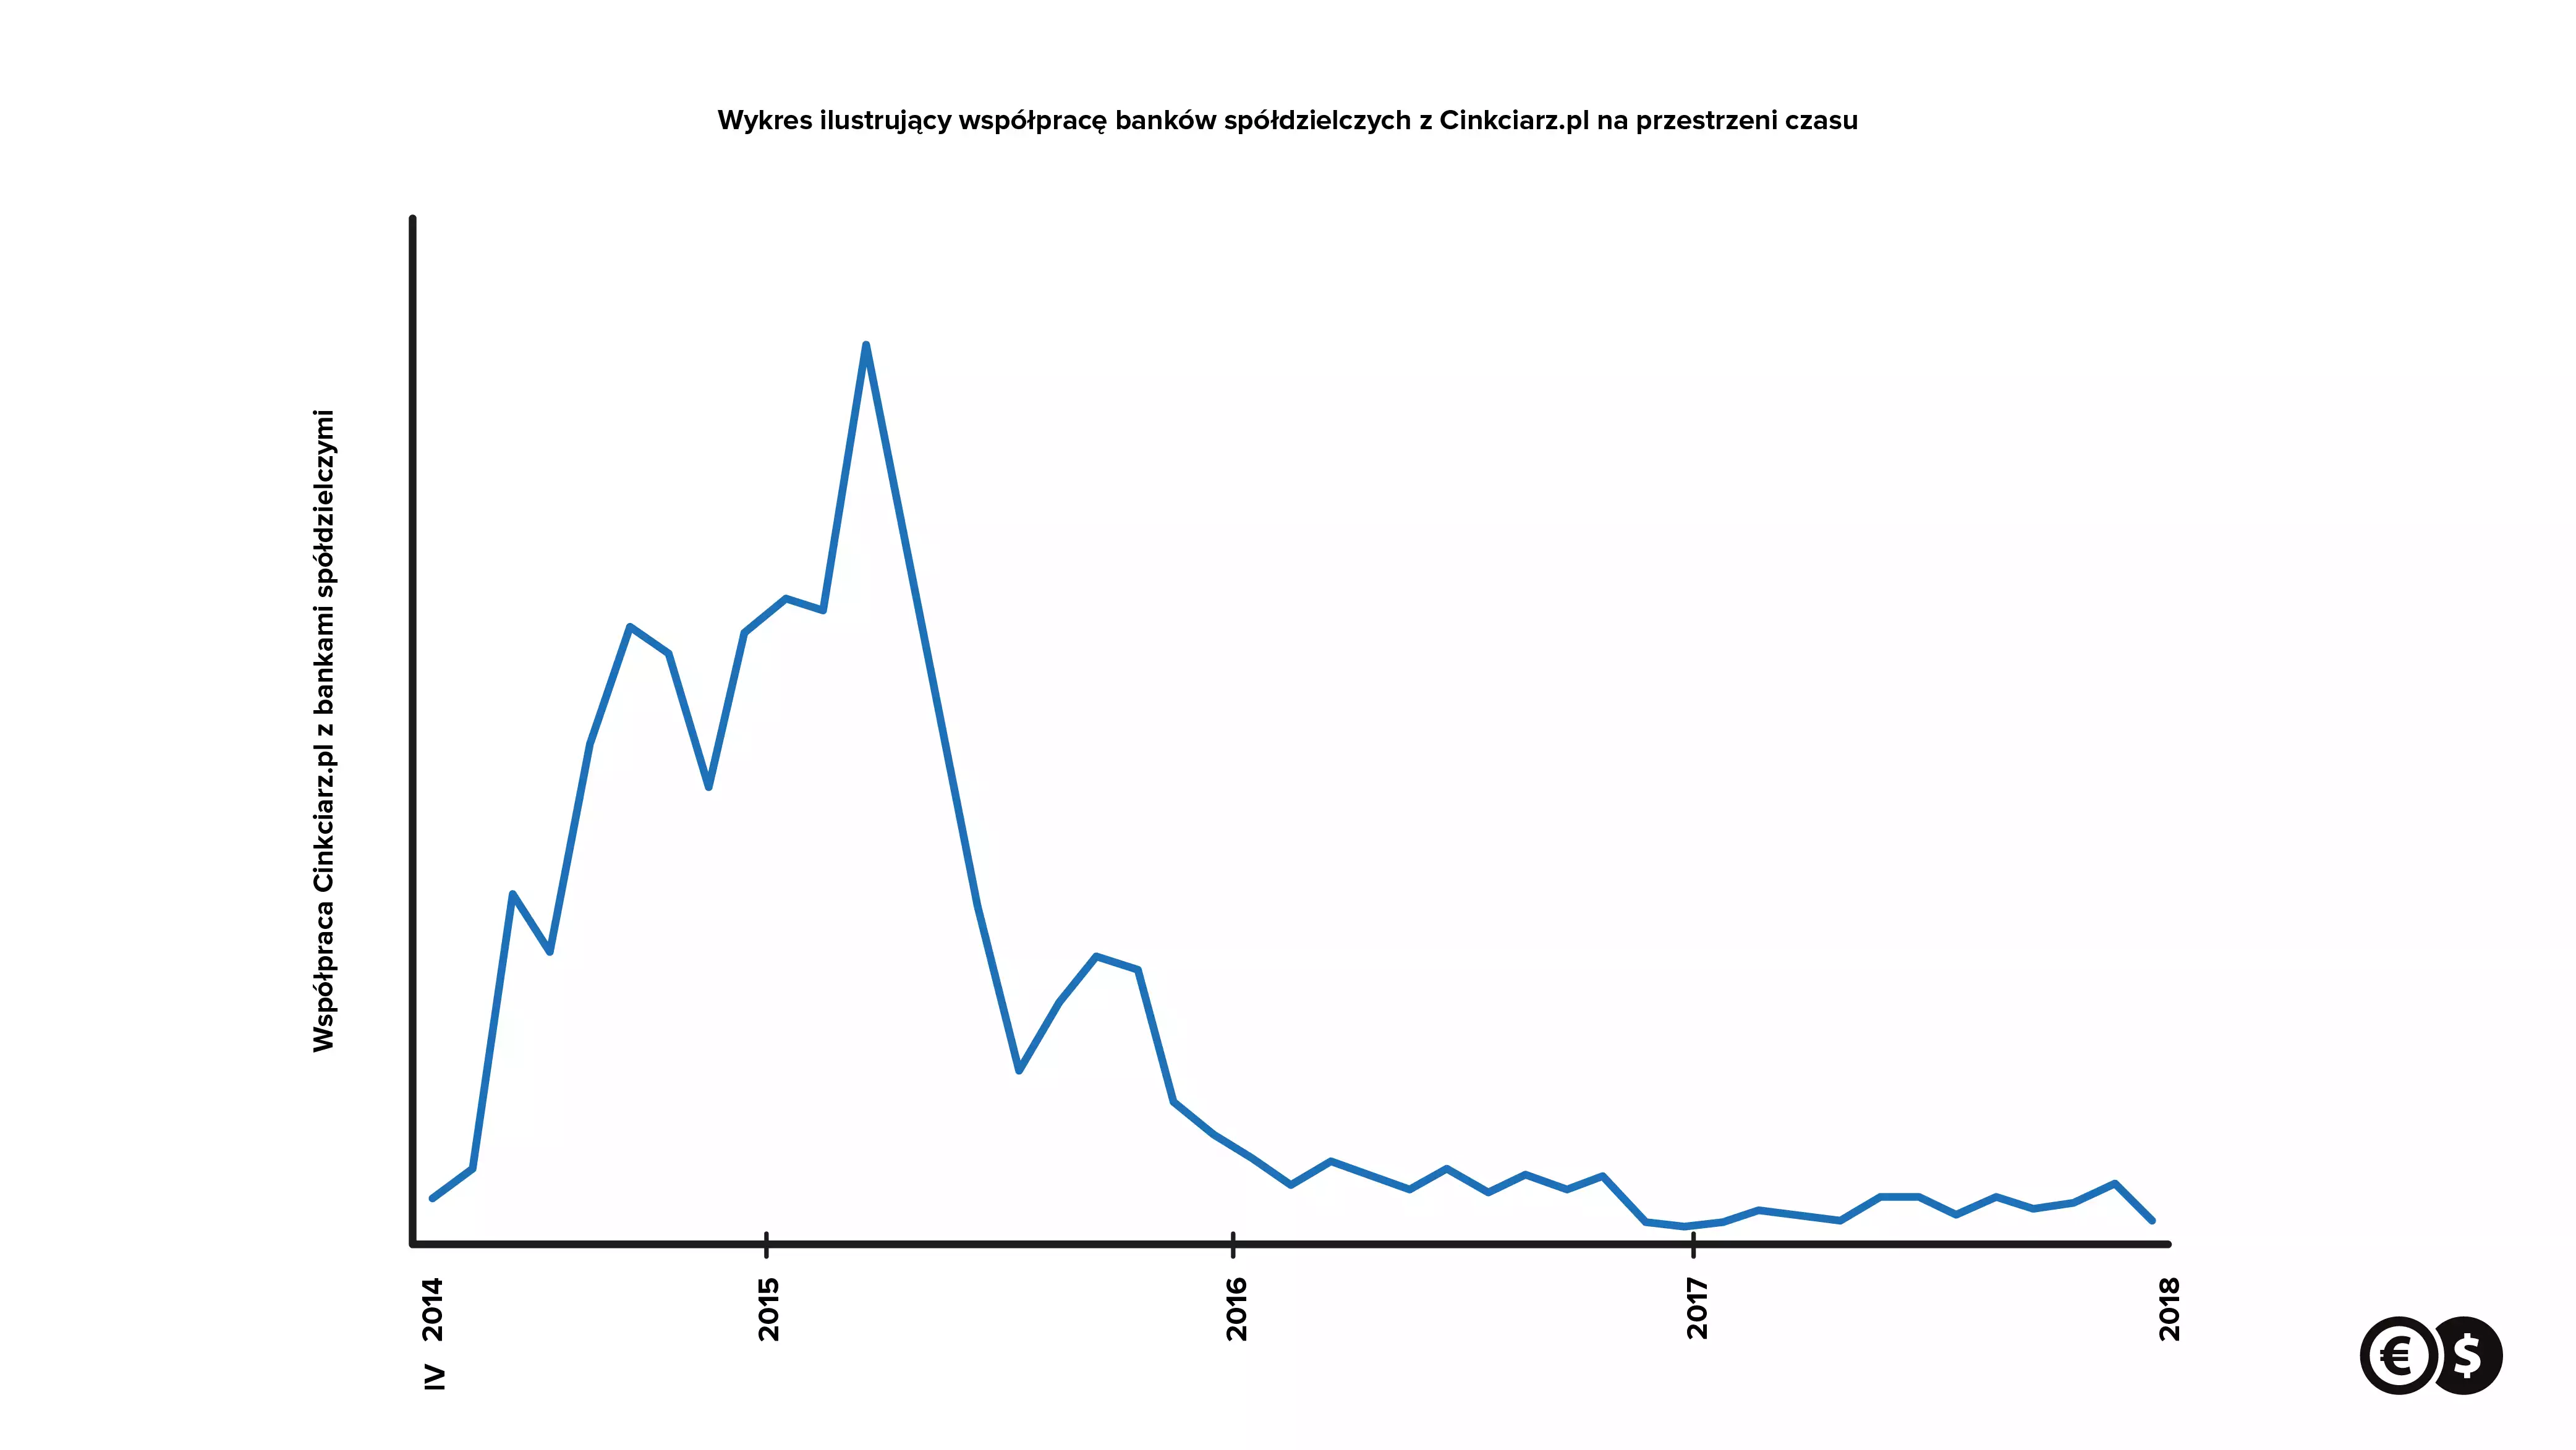 Wykres ilustrujący współpracę banków spółdzielczych z Cinkciarz.pl na przestrzeni czasu.